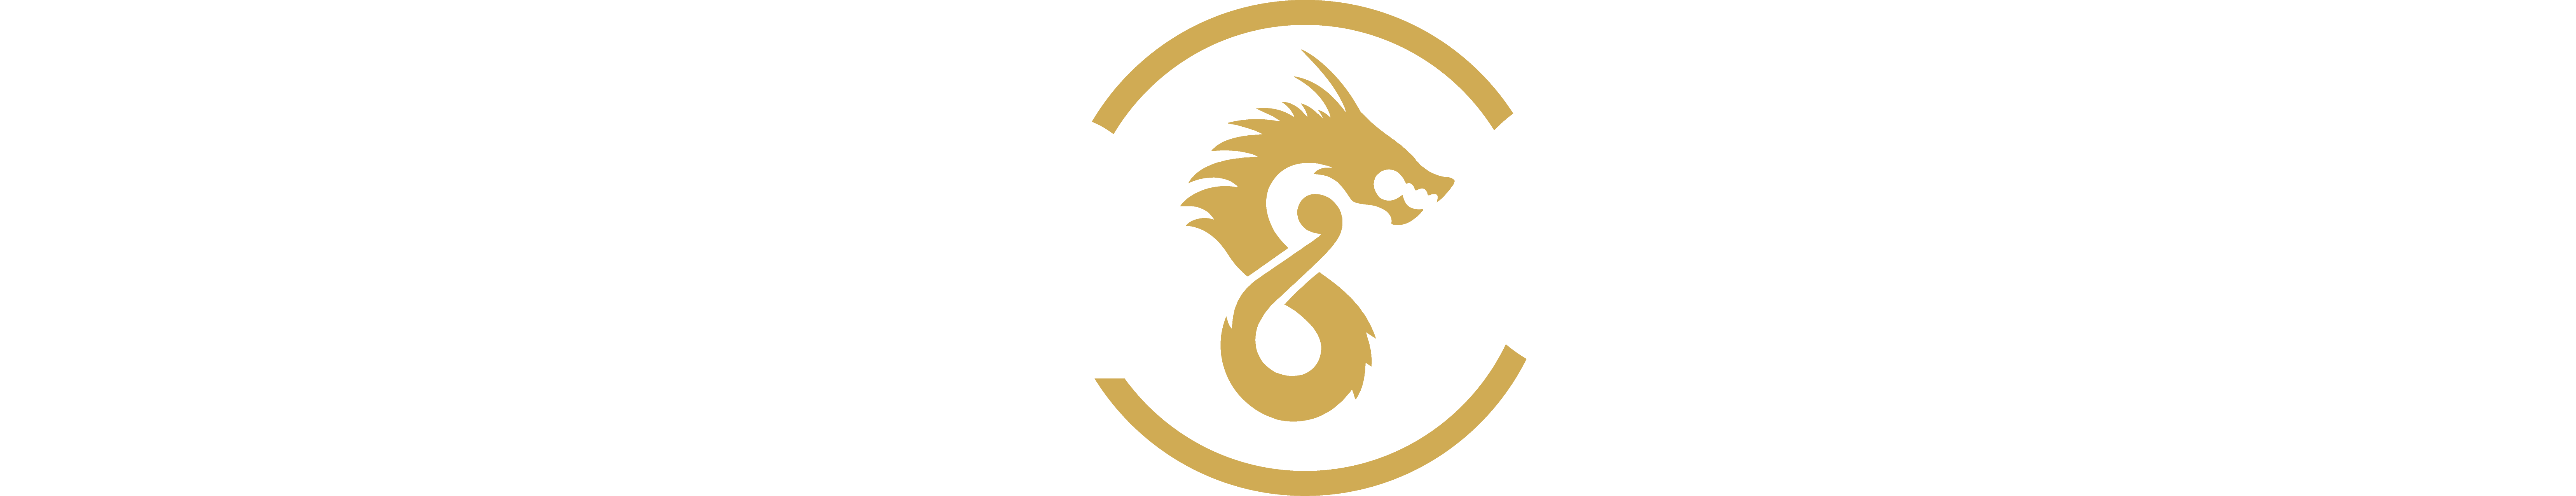 dragongaming-logo